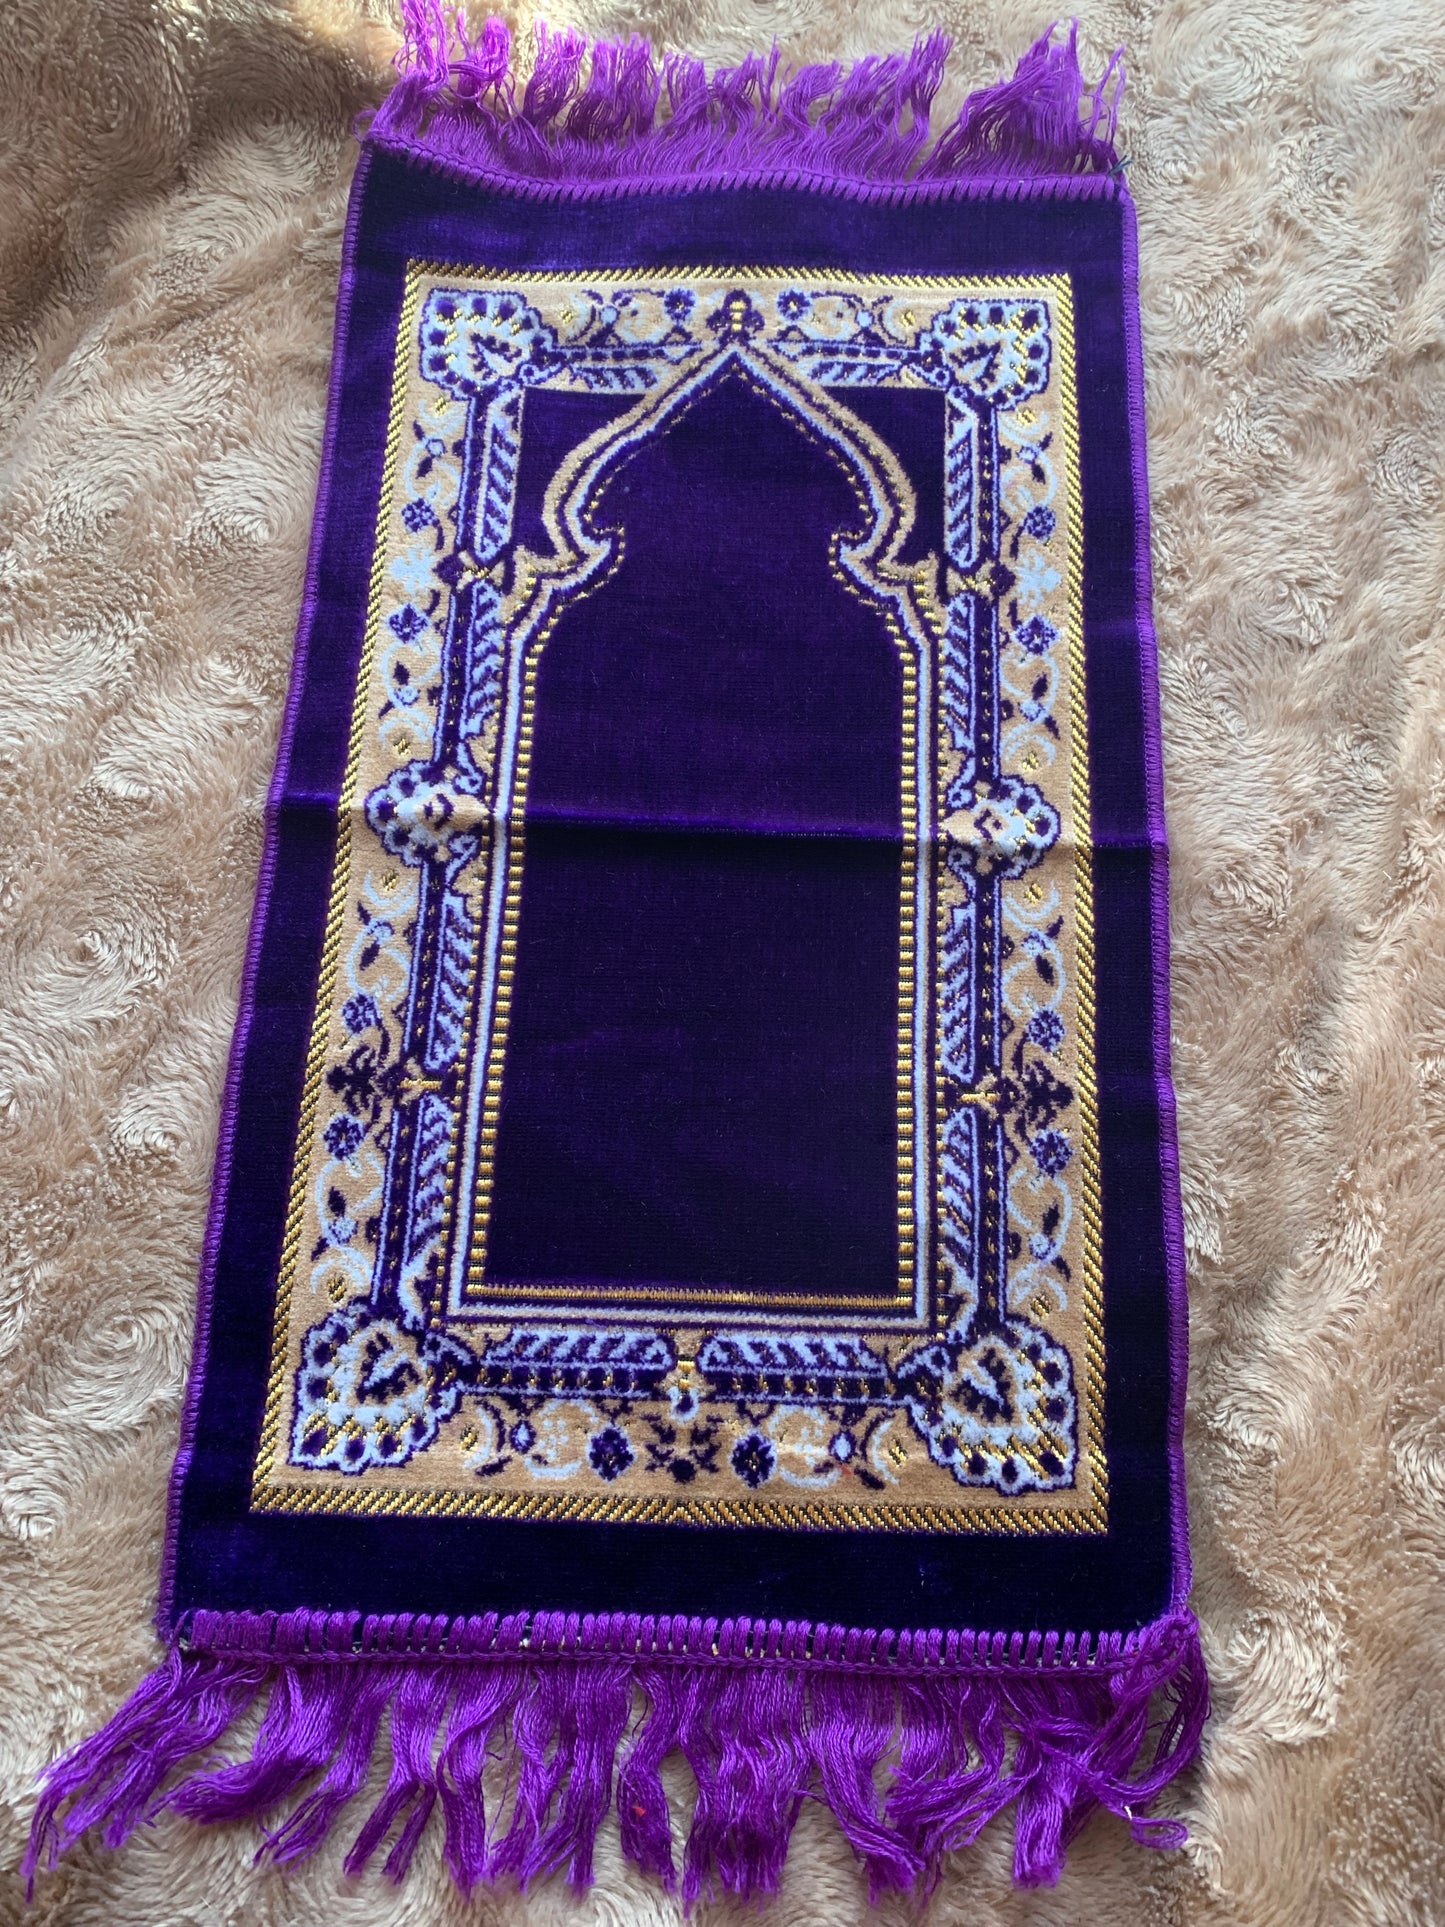 Personal prayer mat